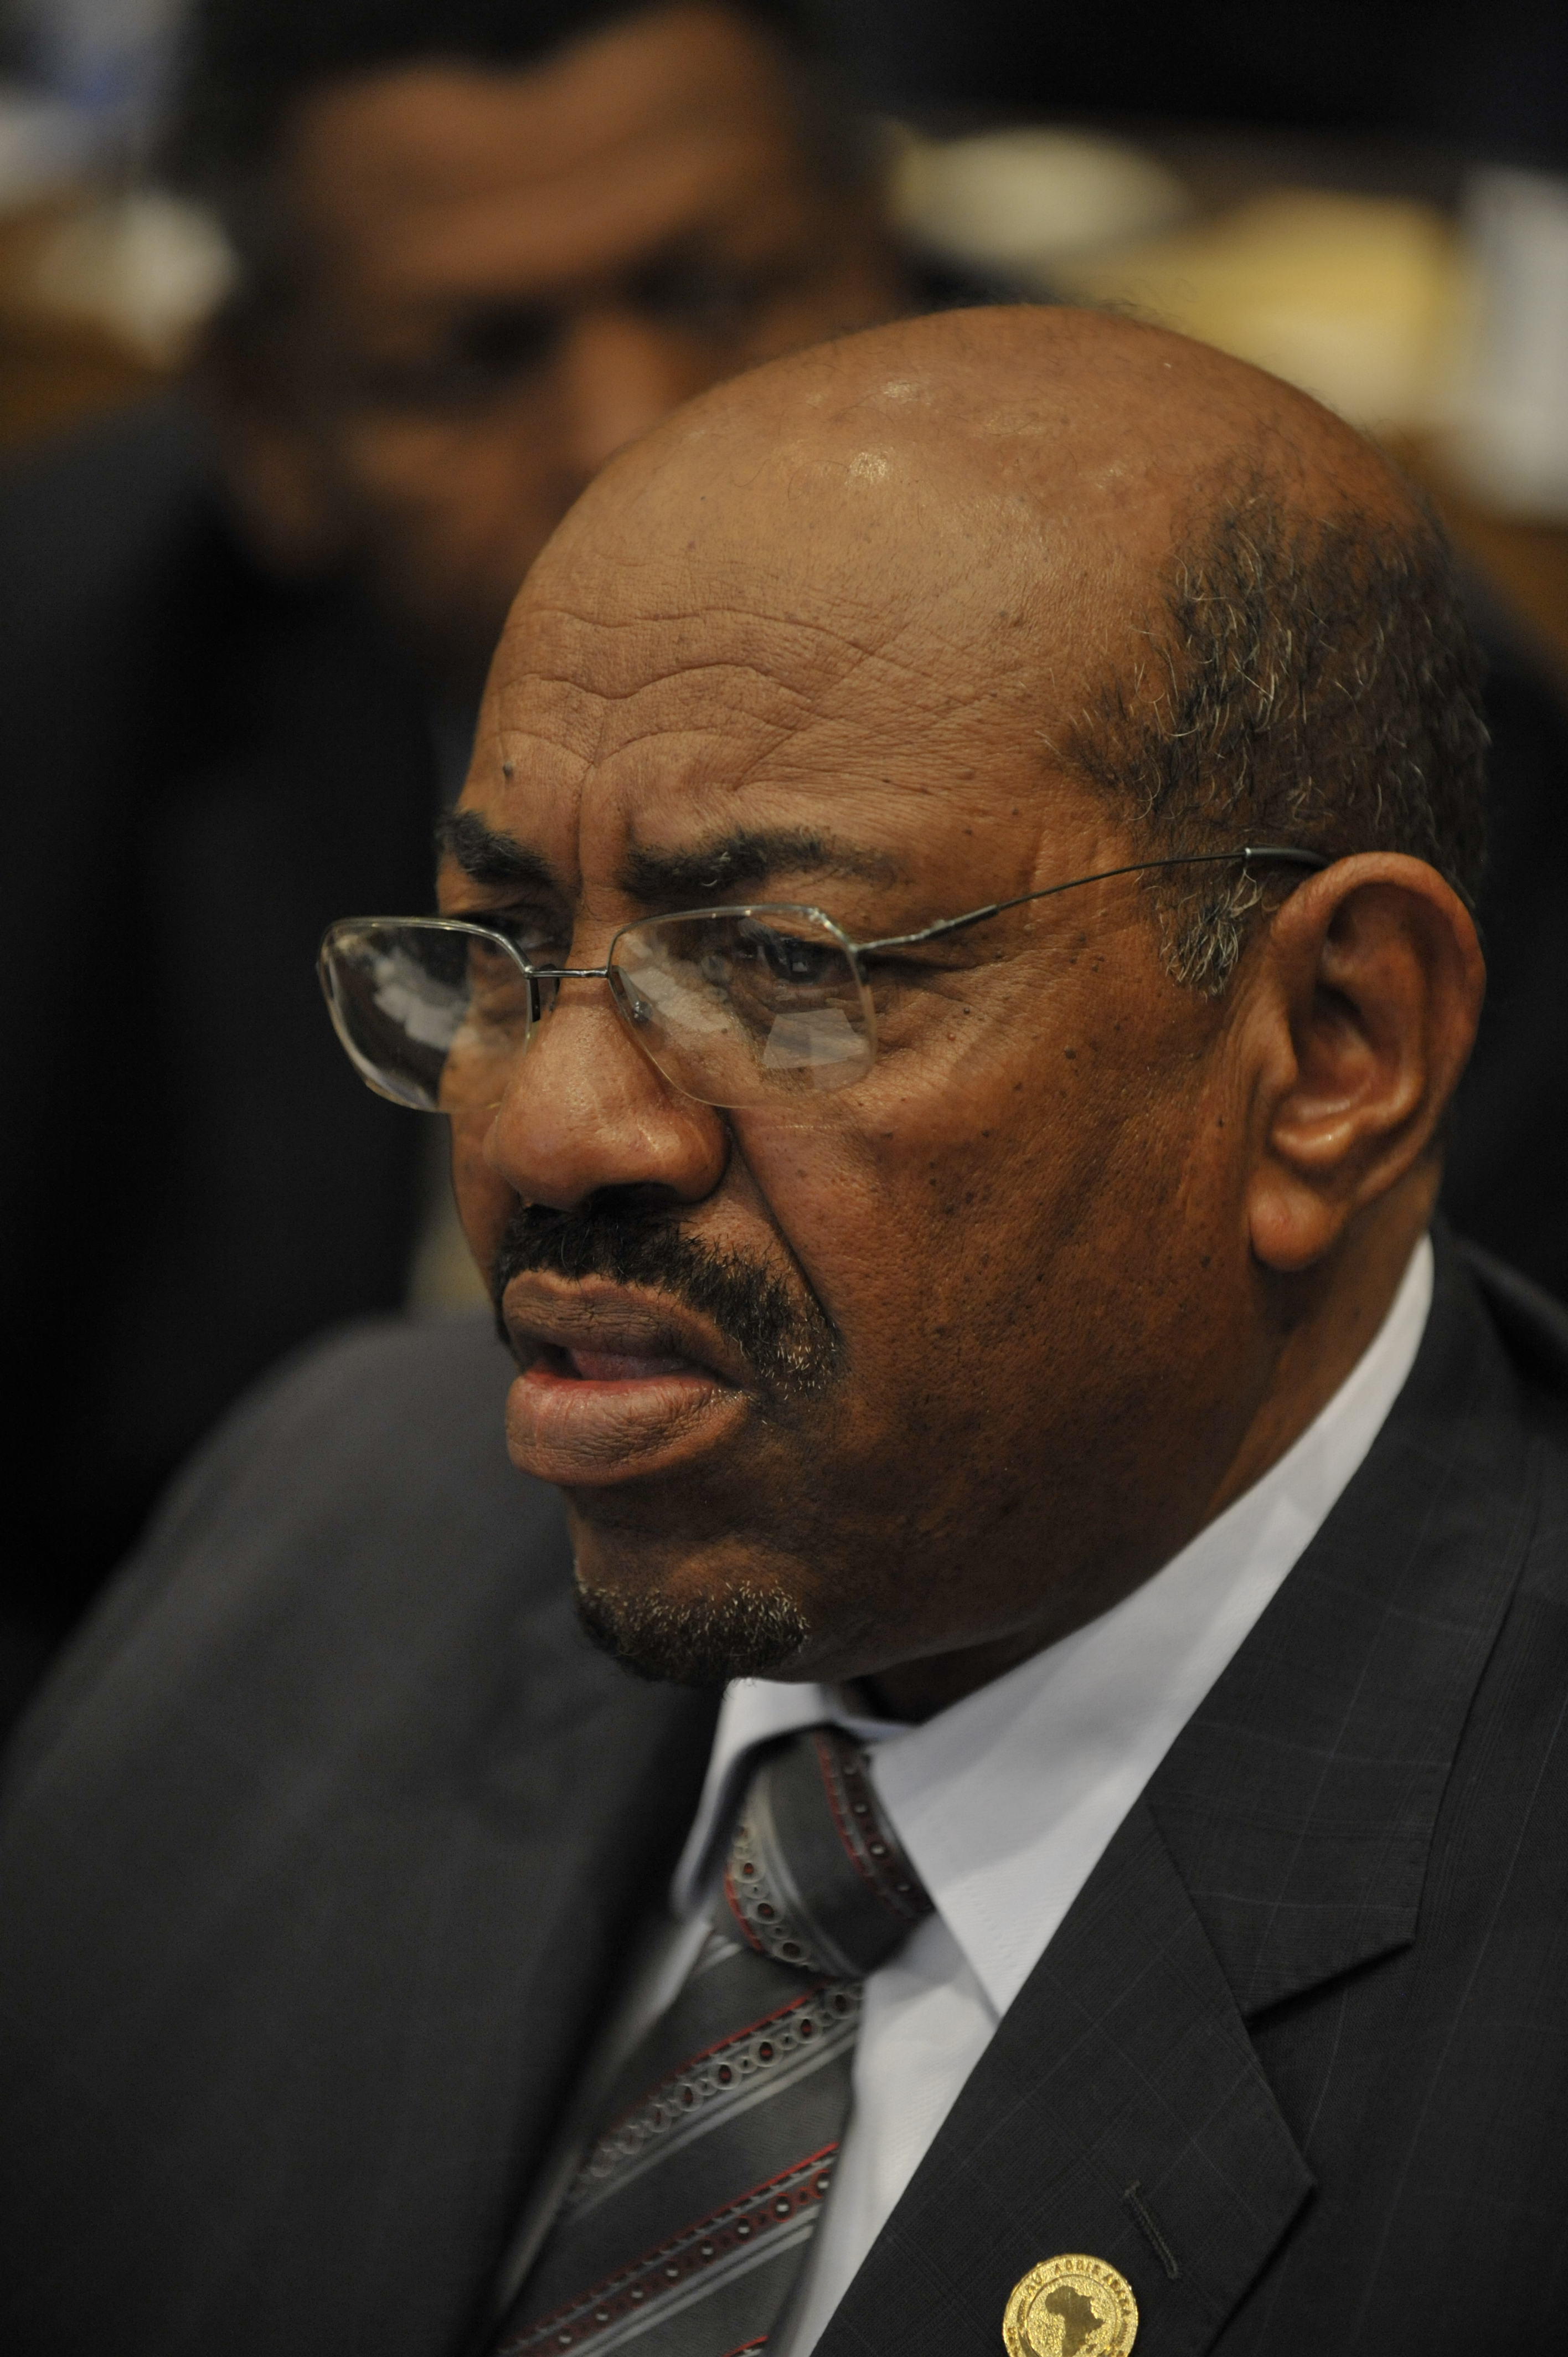 Omar al-Bashir, 12th AU Summit, 090202-N-0506A-137